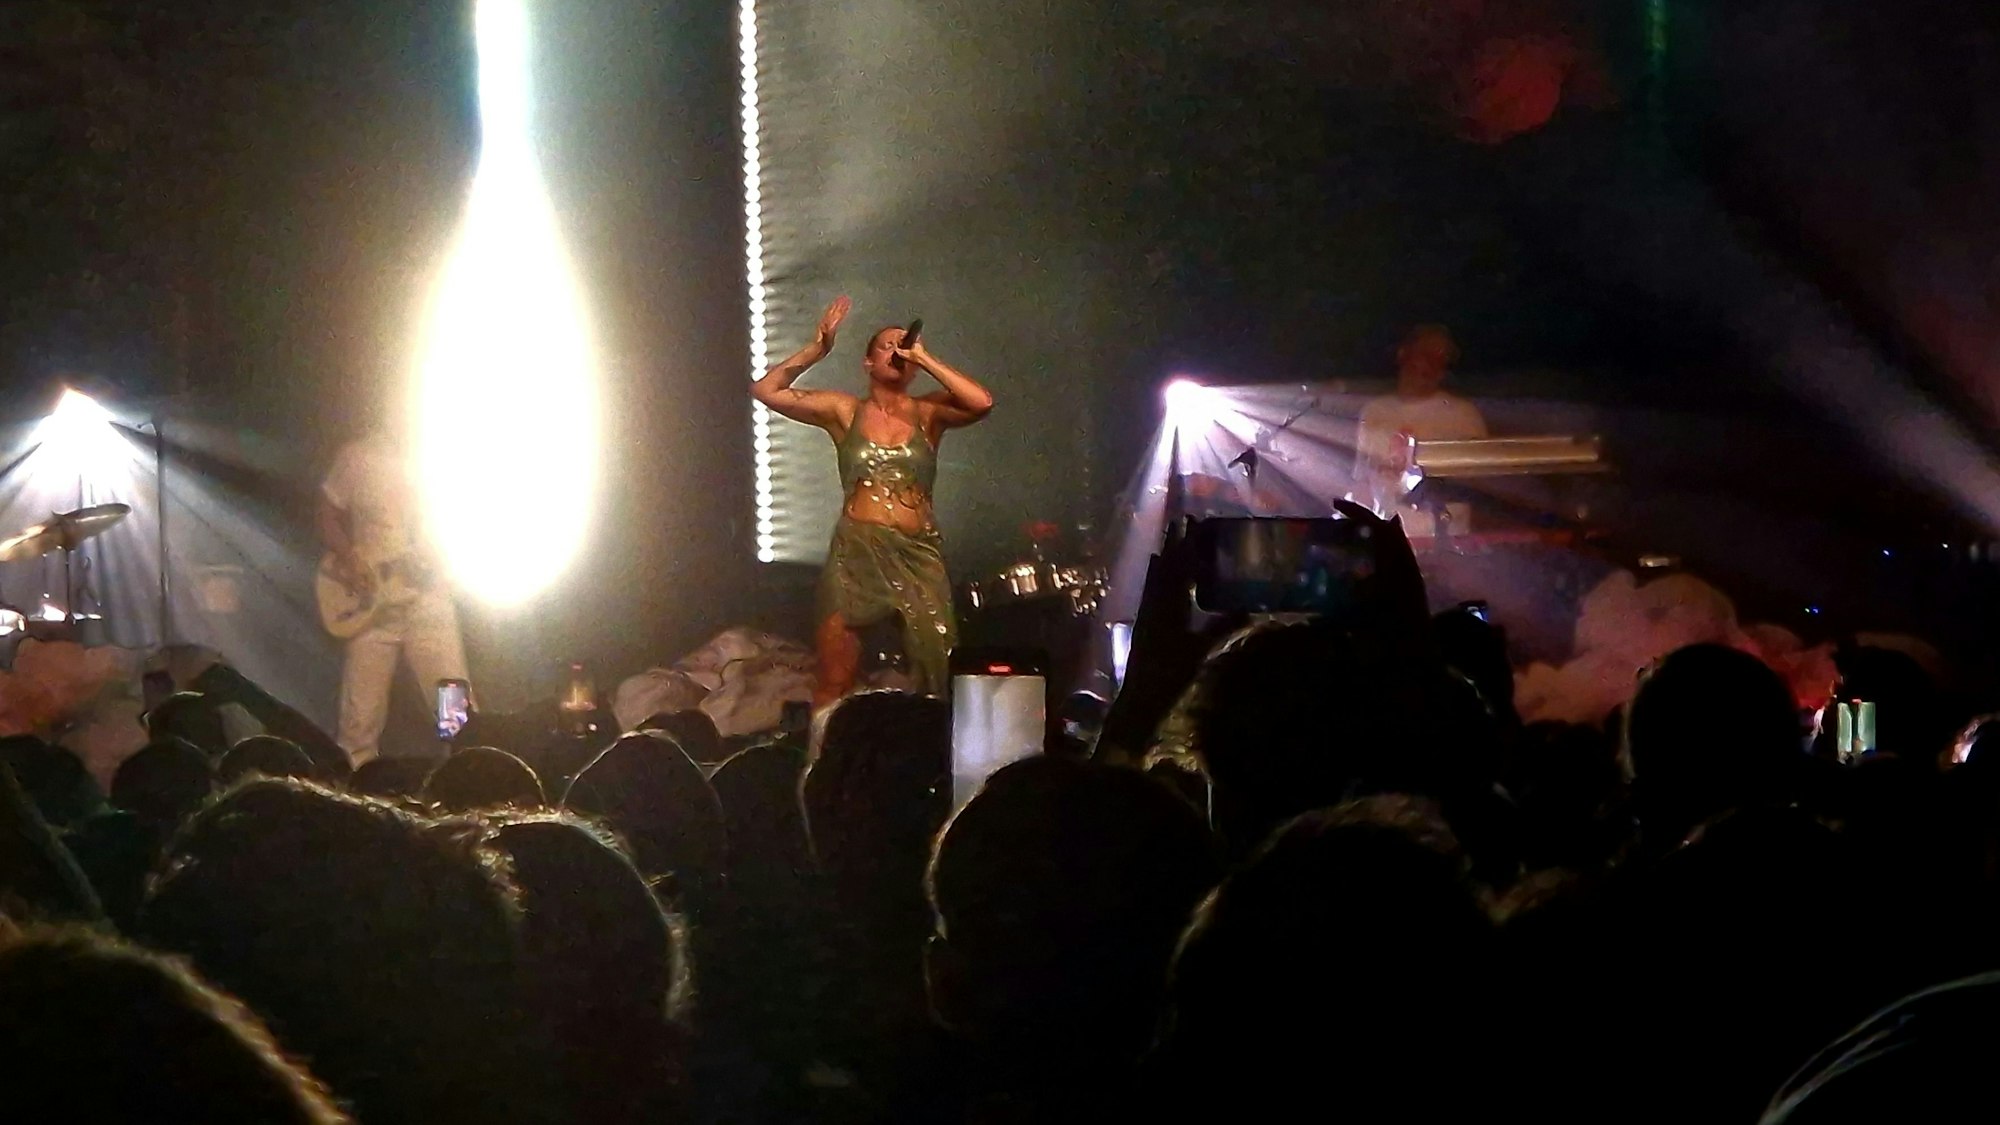 Sängerin Tove Lo bei ihrem Konzert in der Live Music Hall auf der Bühne.